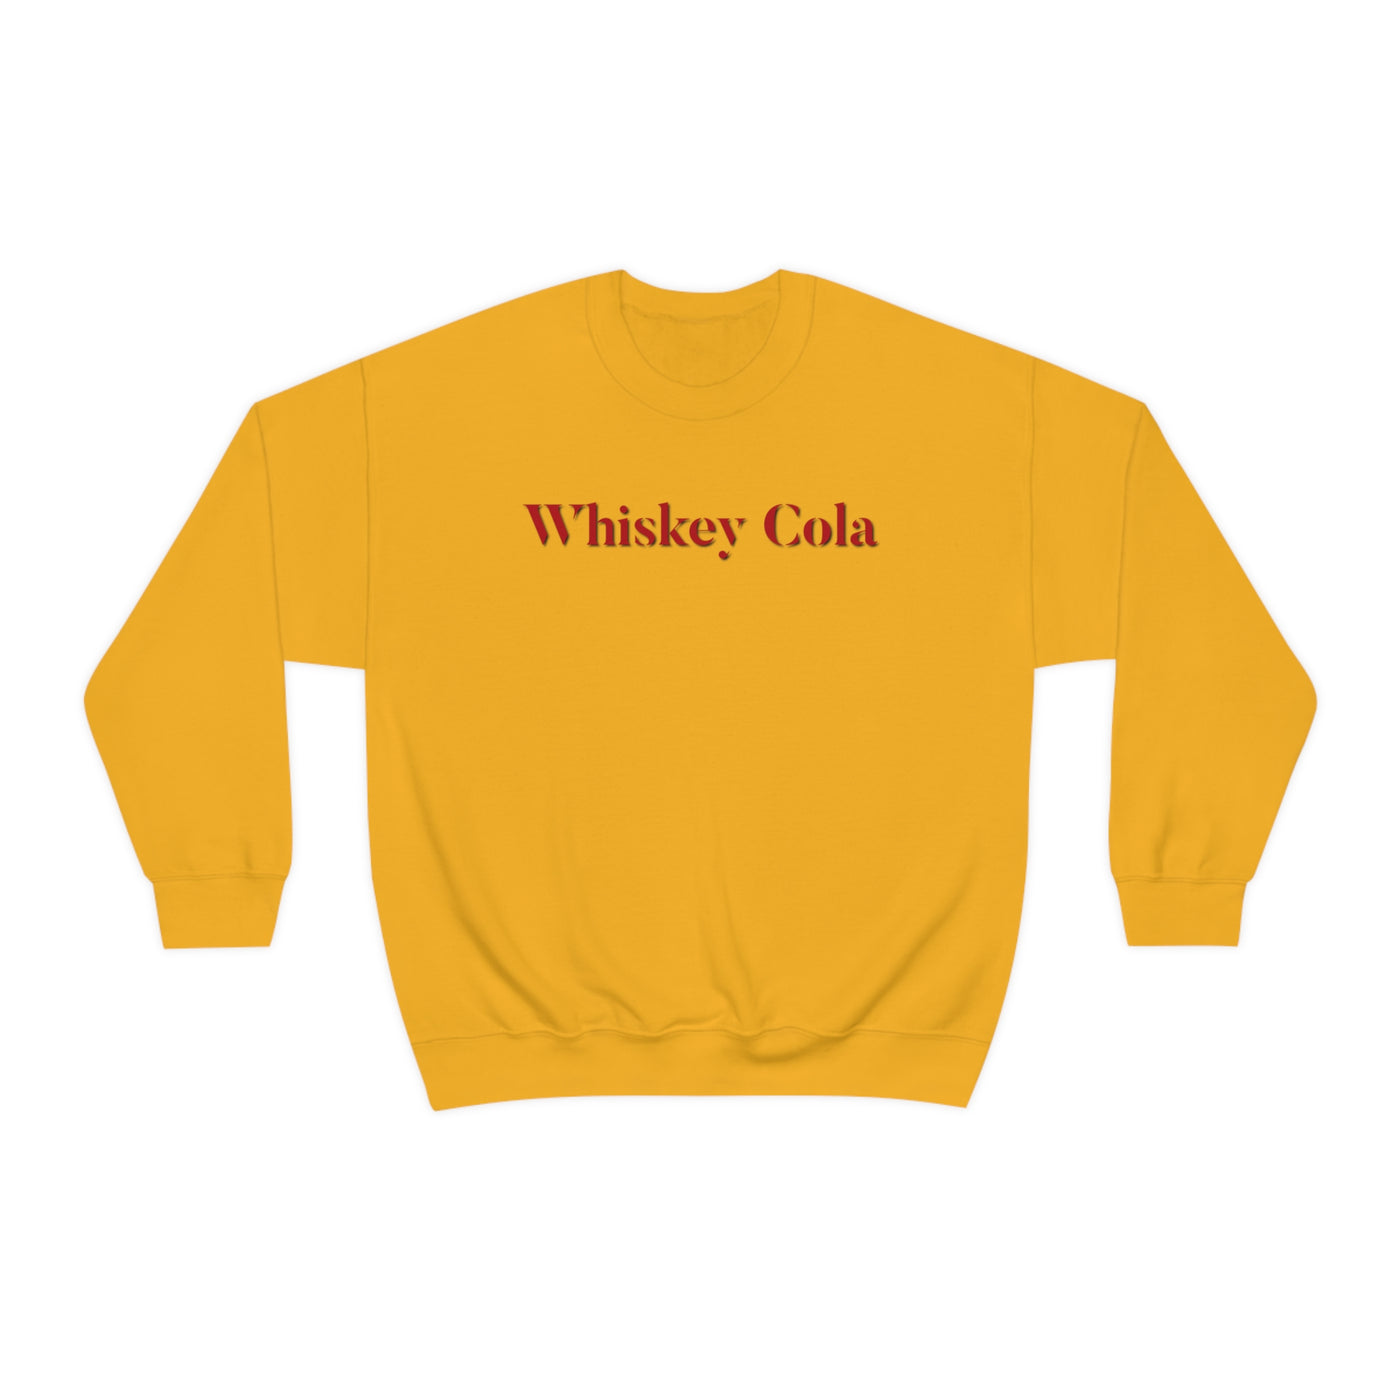 Whiskey Cola Crewneck Sweatshirt